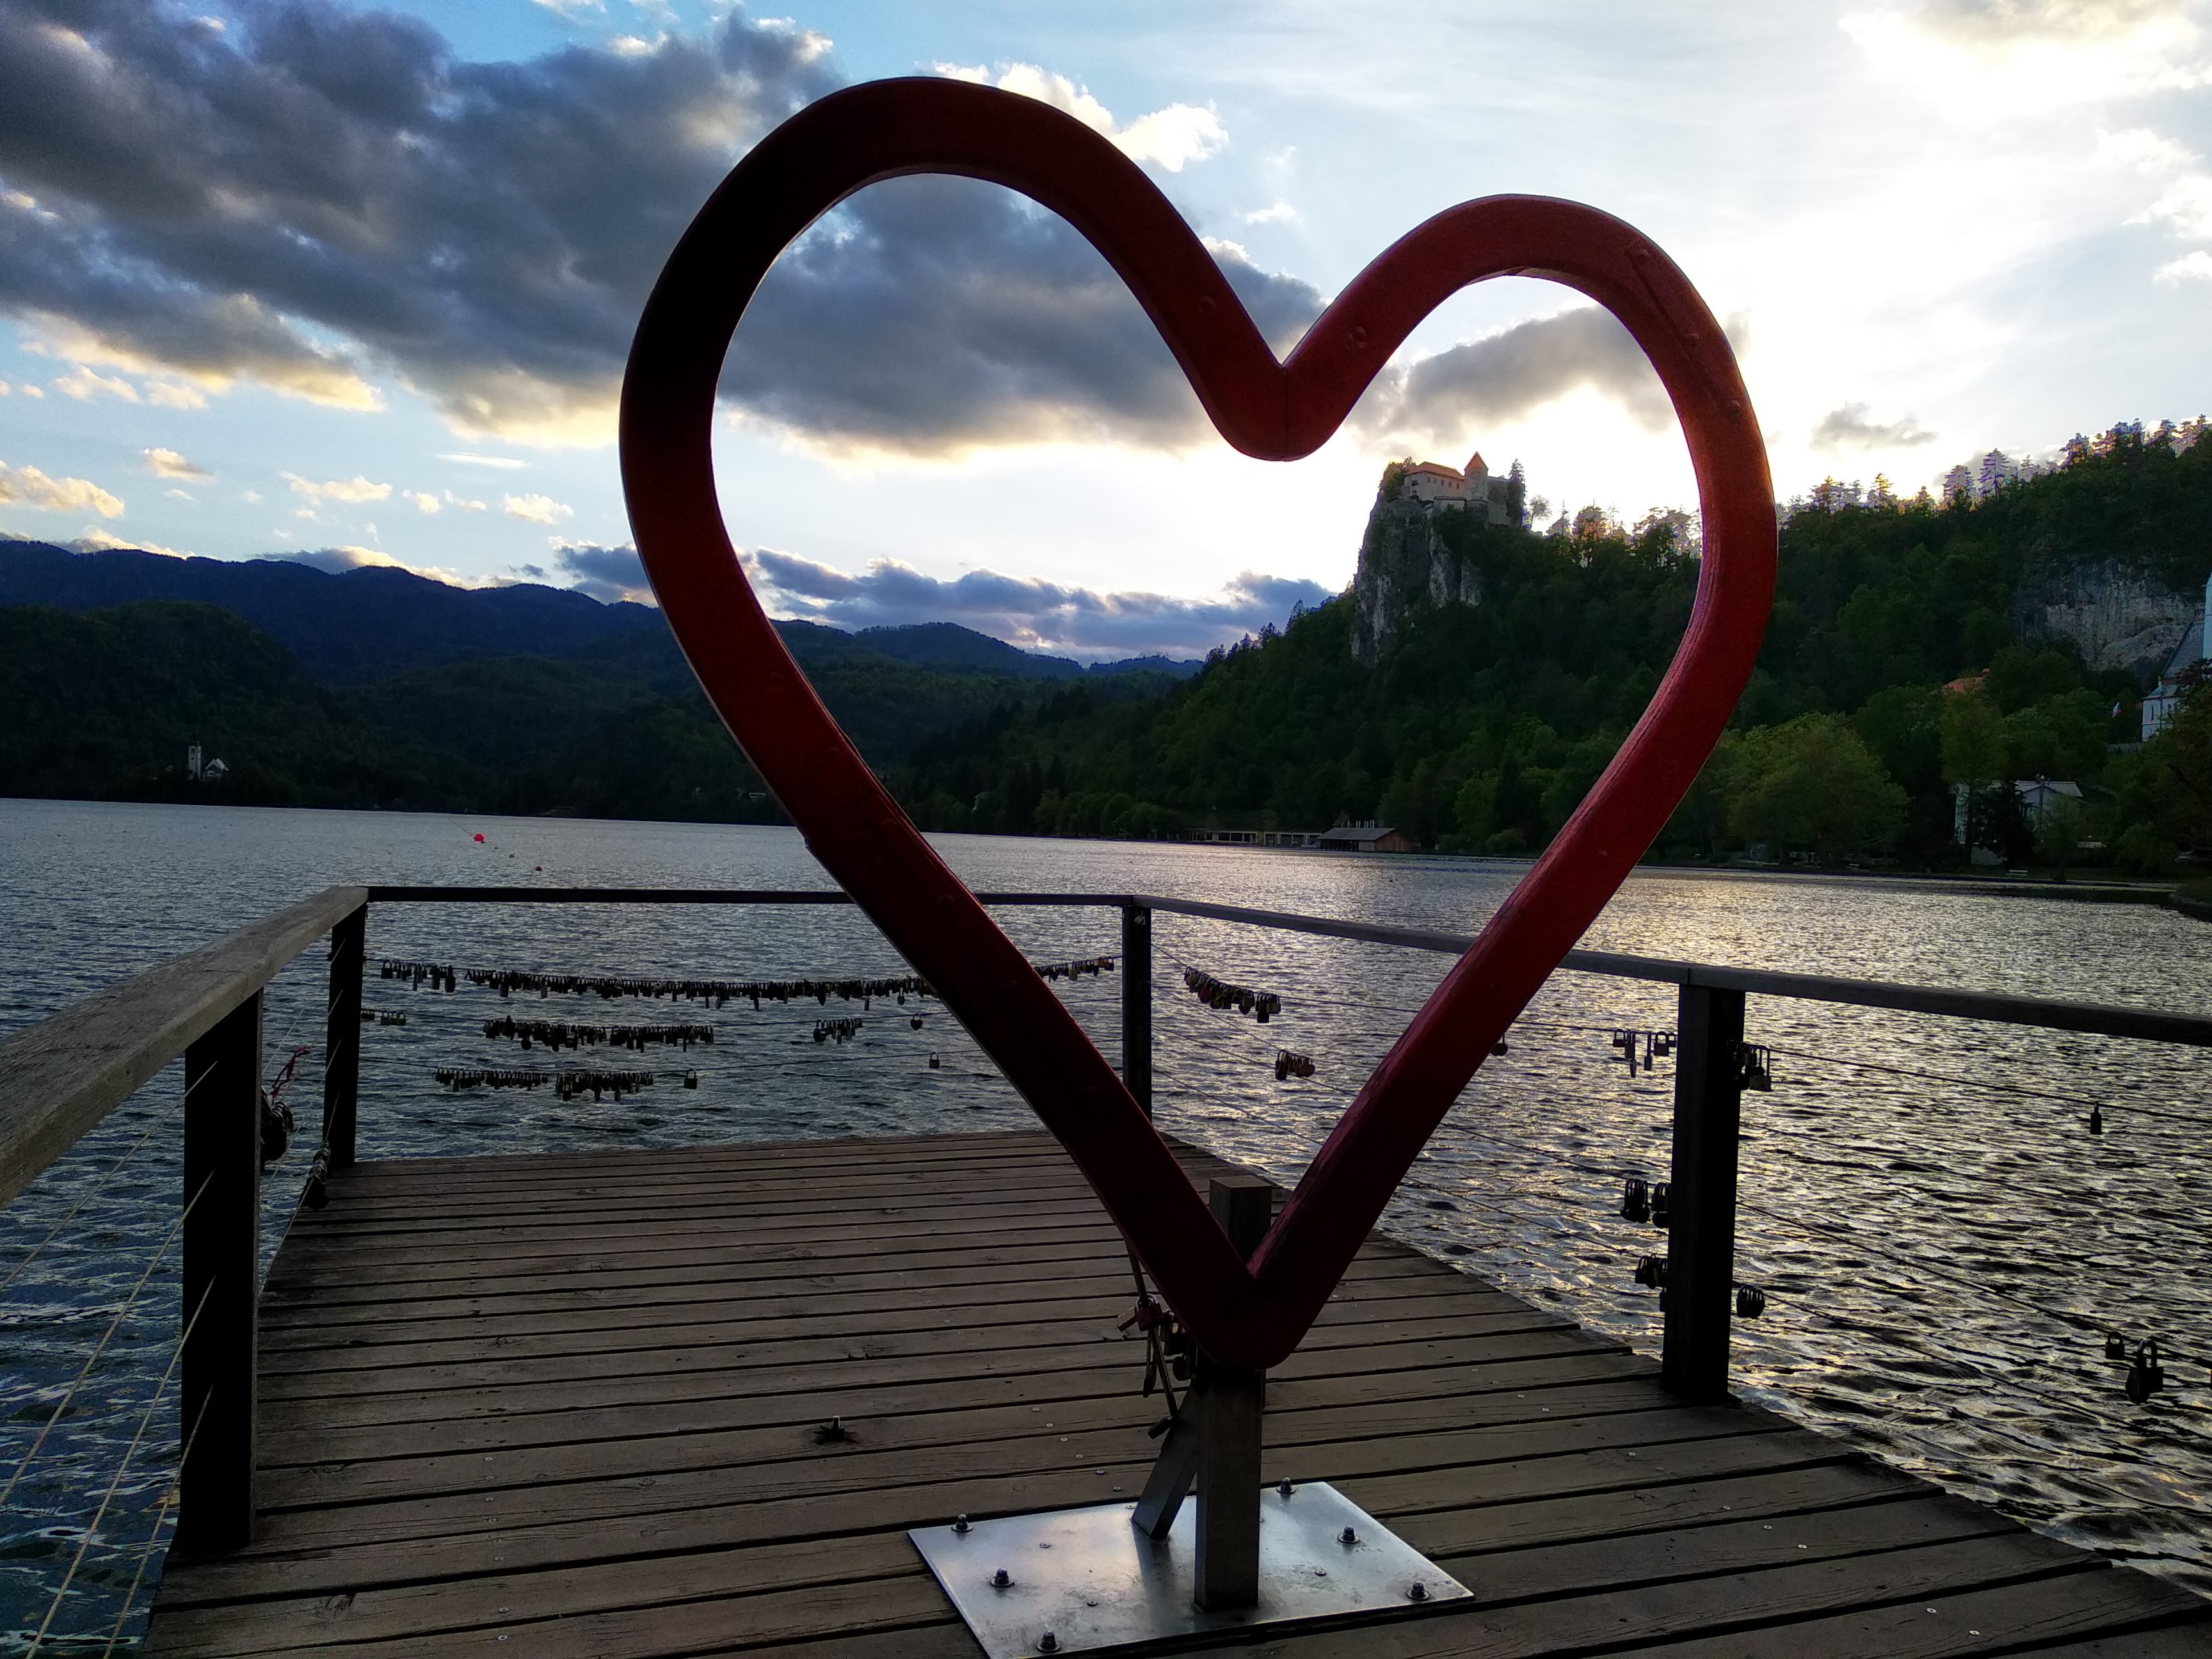 озеро Блед, Словения - мой отзыв